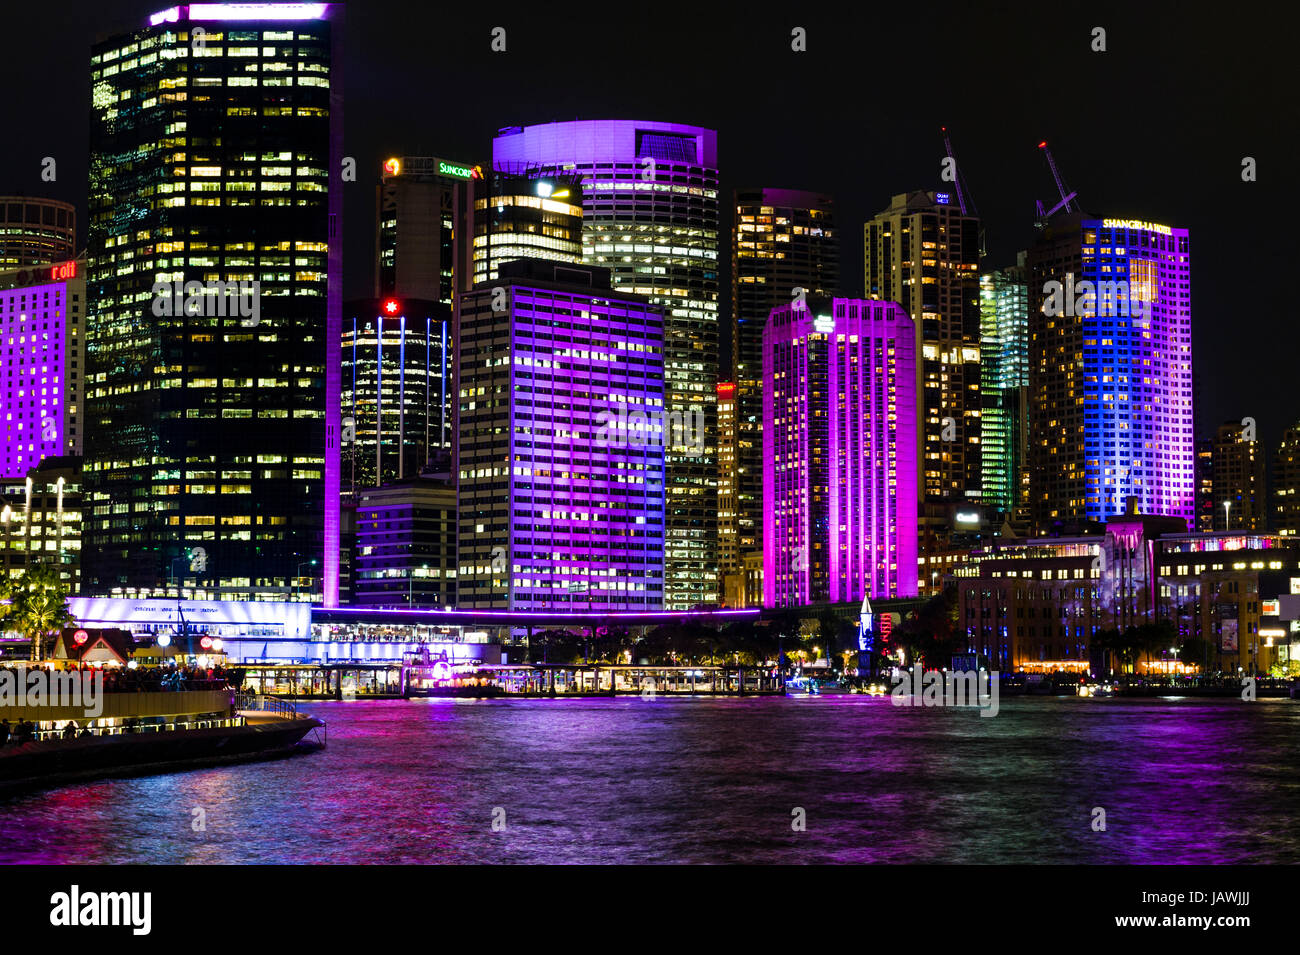 Le Sydney skyline illuminée en lumières colorées sur le vivid Sydney Festival. Banque D'Images